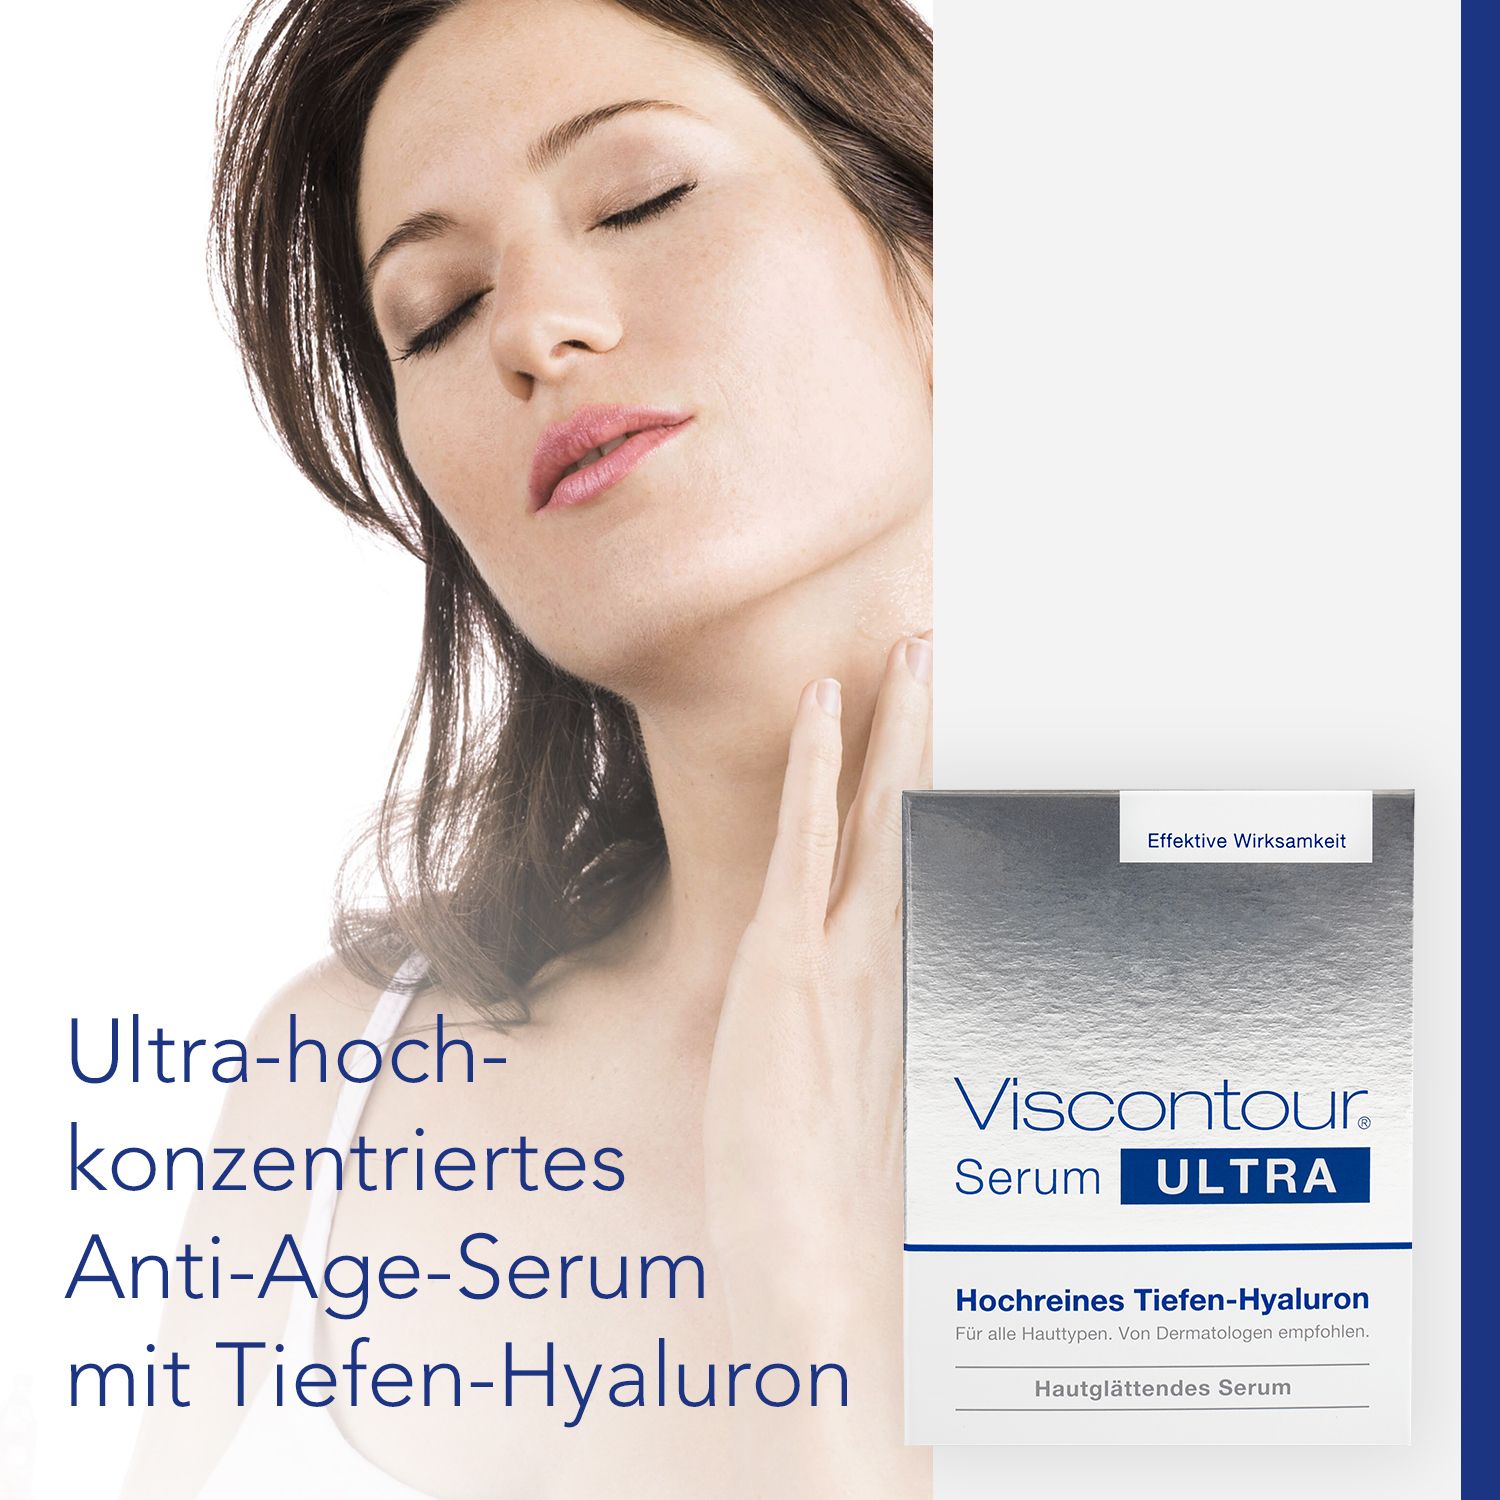 Viscontour® Serum Ultra 20 Ampullen mit Tiefen-Hyaluron